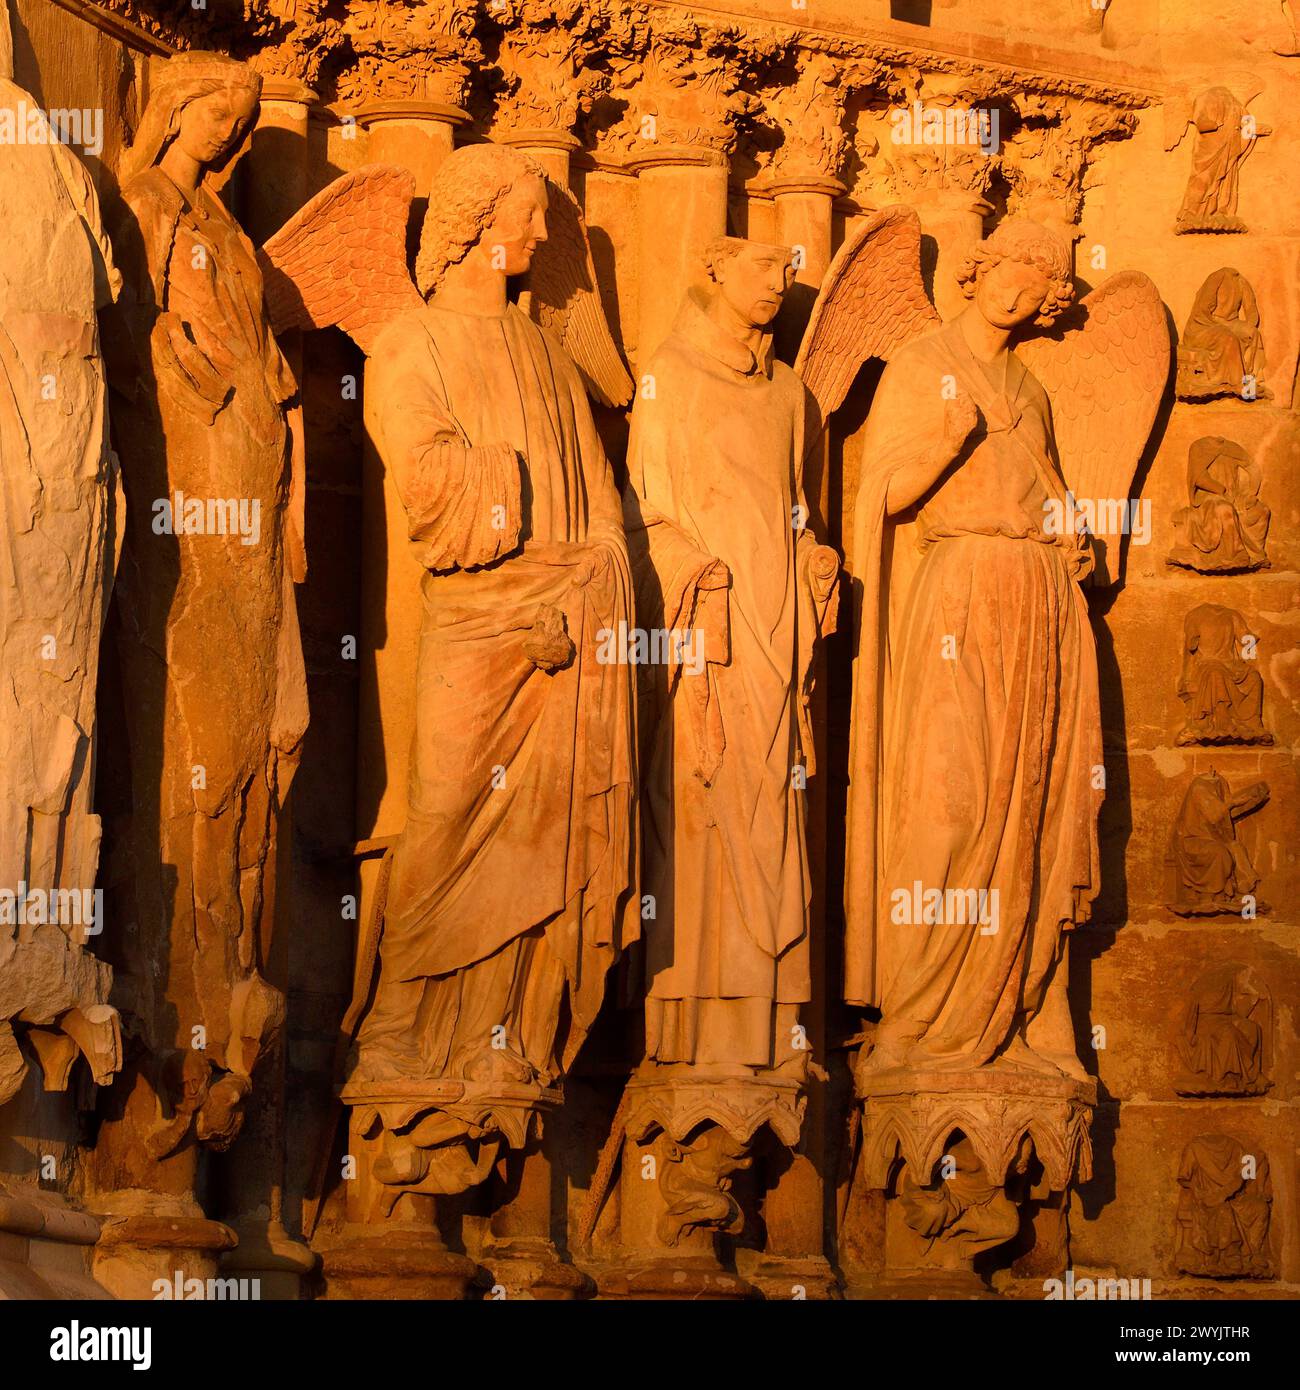 Frankreich, Marne, Reims, Kathedrale Notre Dame, die von der UNESCO zum Weltkulturerbe erklärt wurde, Skulptur, die den Engel mit dem Lächeln auf dem linken Portal der Westfassade darstellt Stockfoto